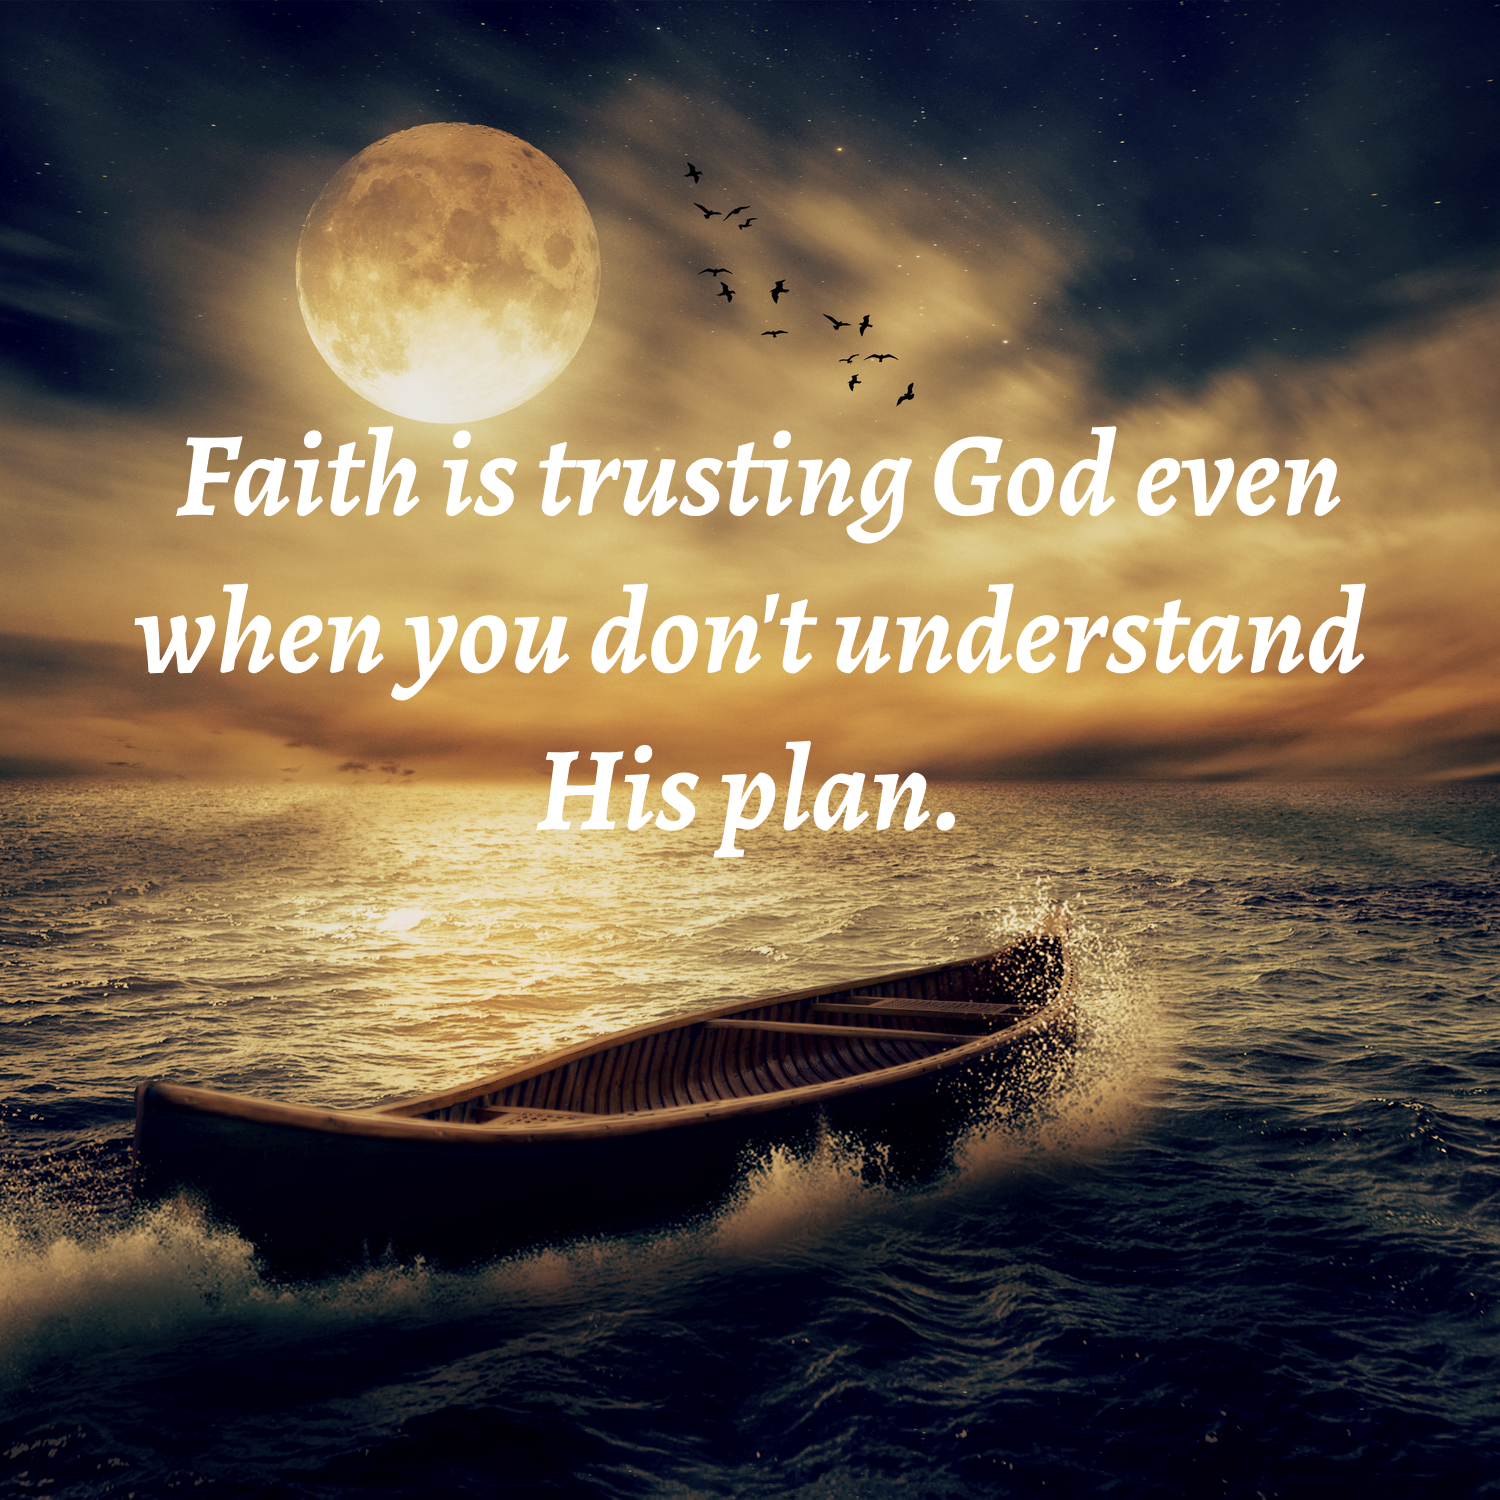 Faith image